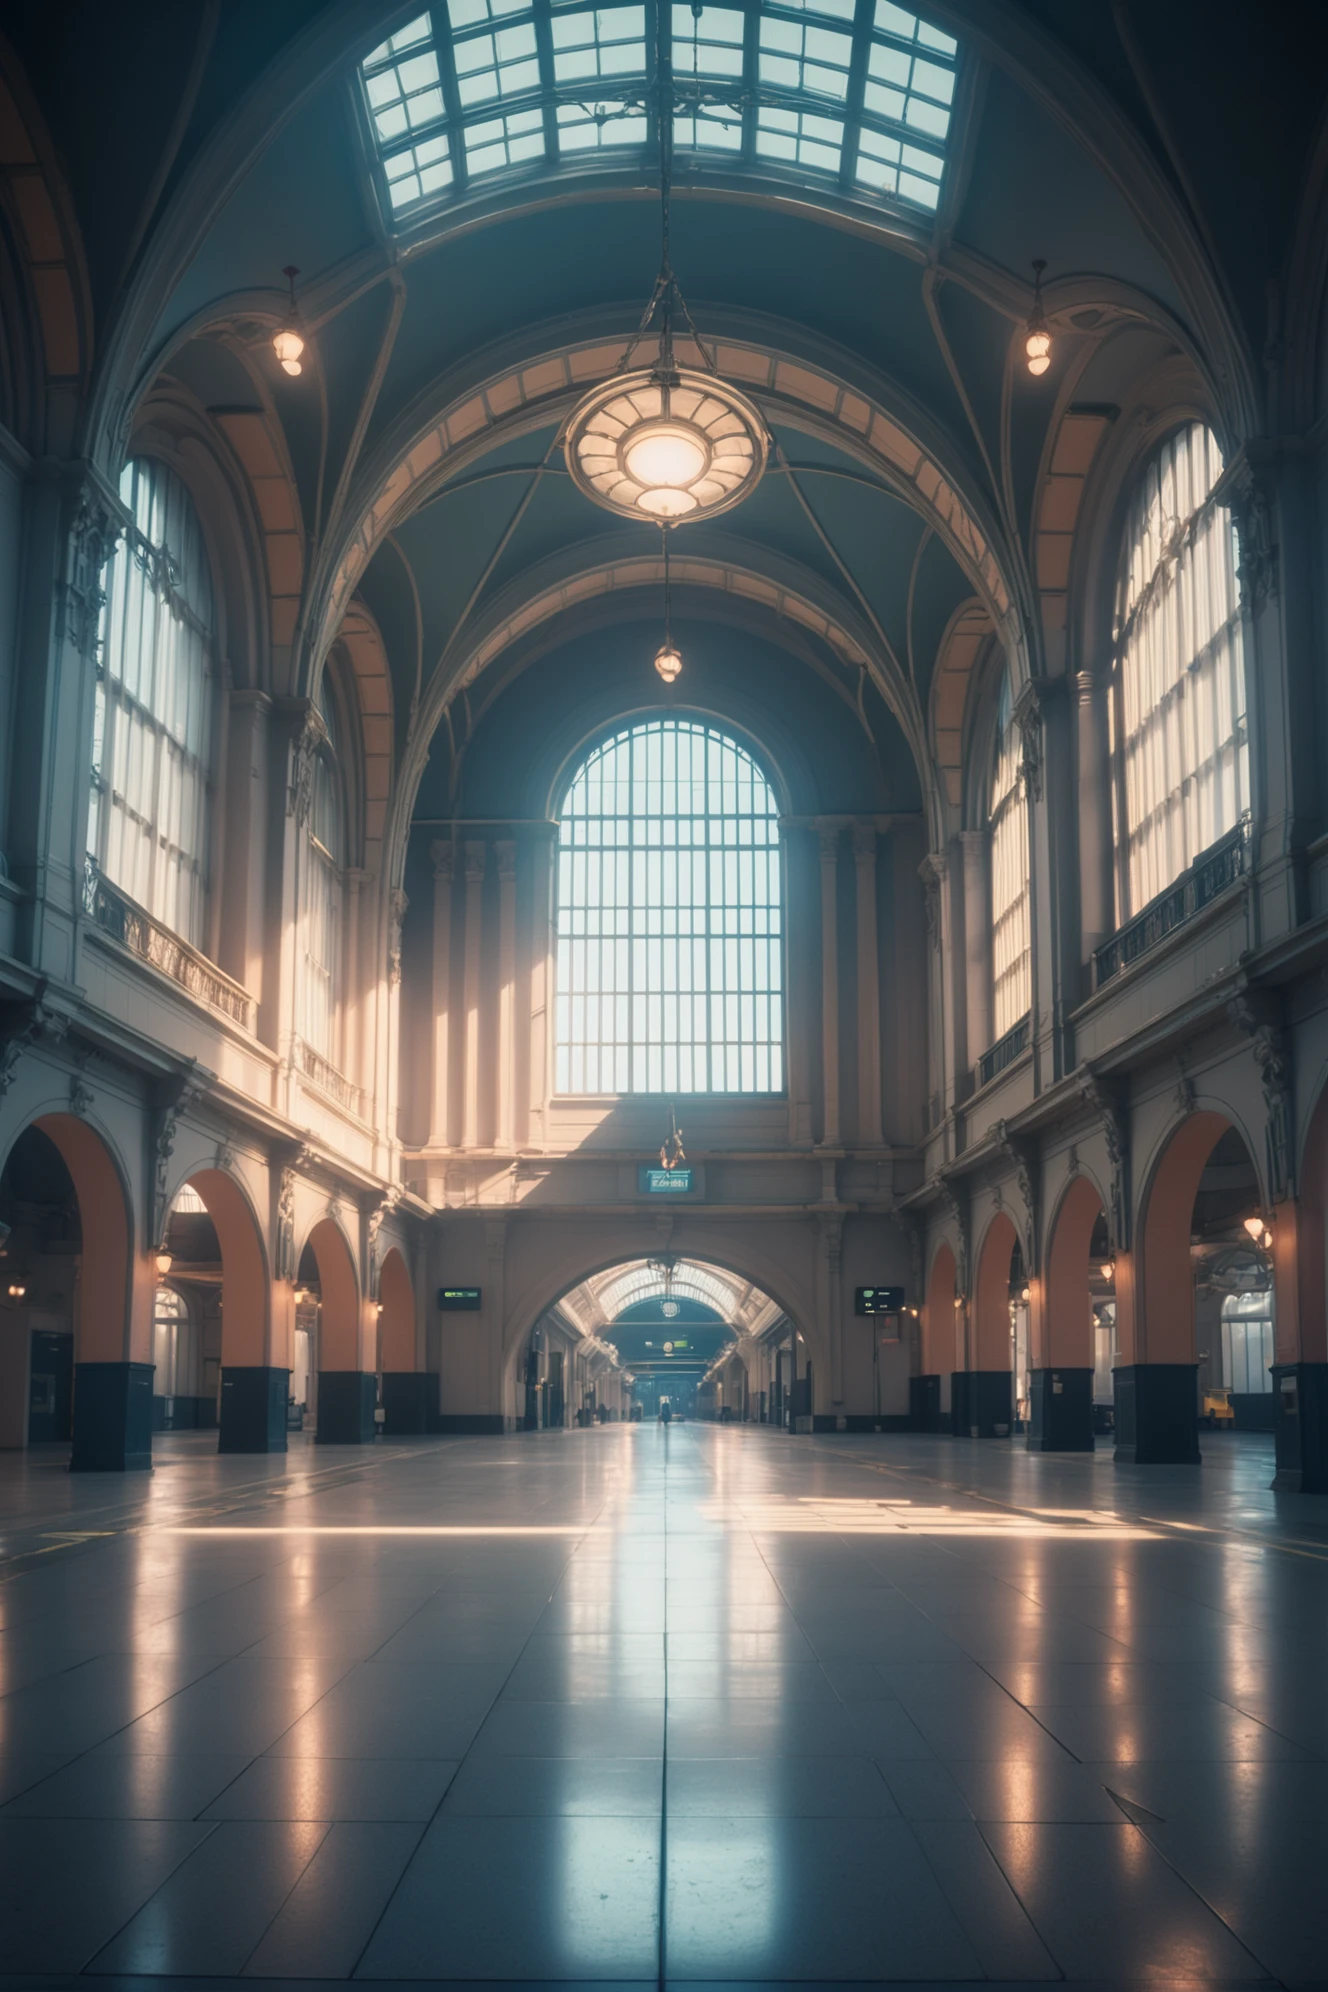 照片, 电影调色, 科幻, 历史悠久的火车站大厅空无一人,时间之初光芒四射的奇幻都市, 杰作